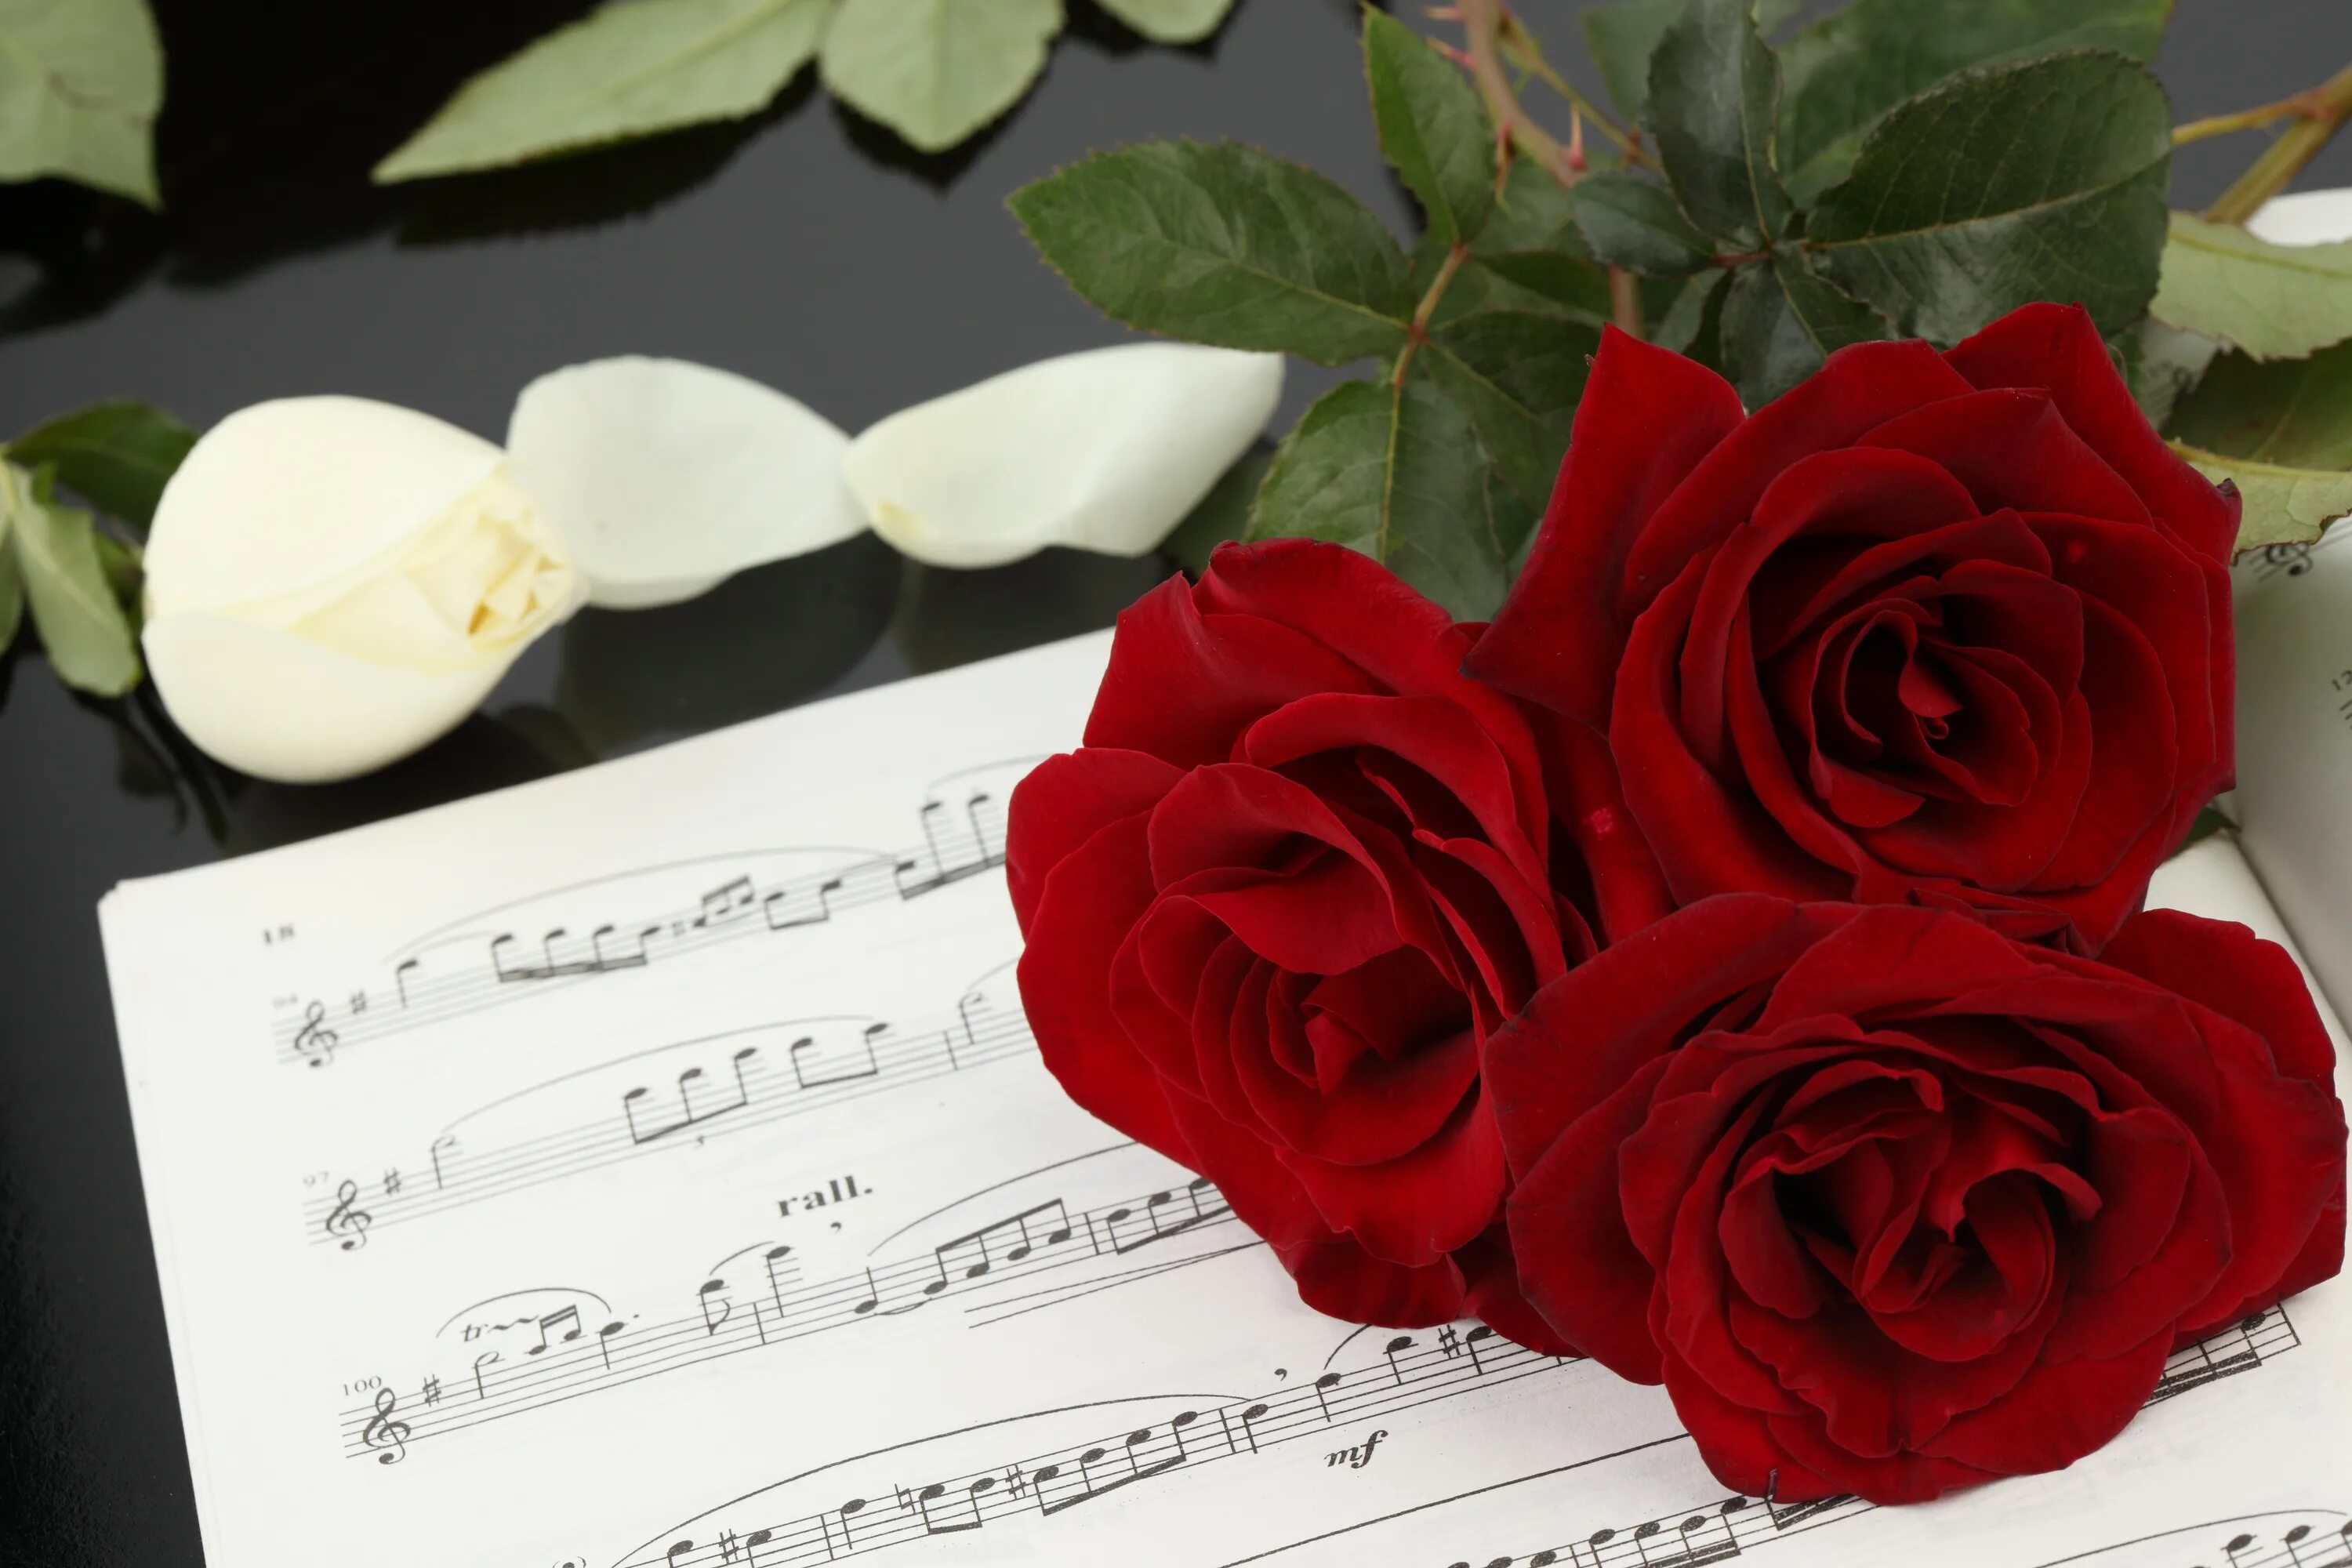 Ноты и цветы. Цветы на рояле. Розы и Ноты. Музыкальный цветок.